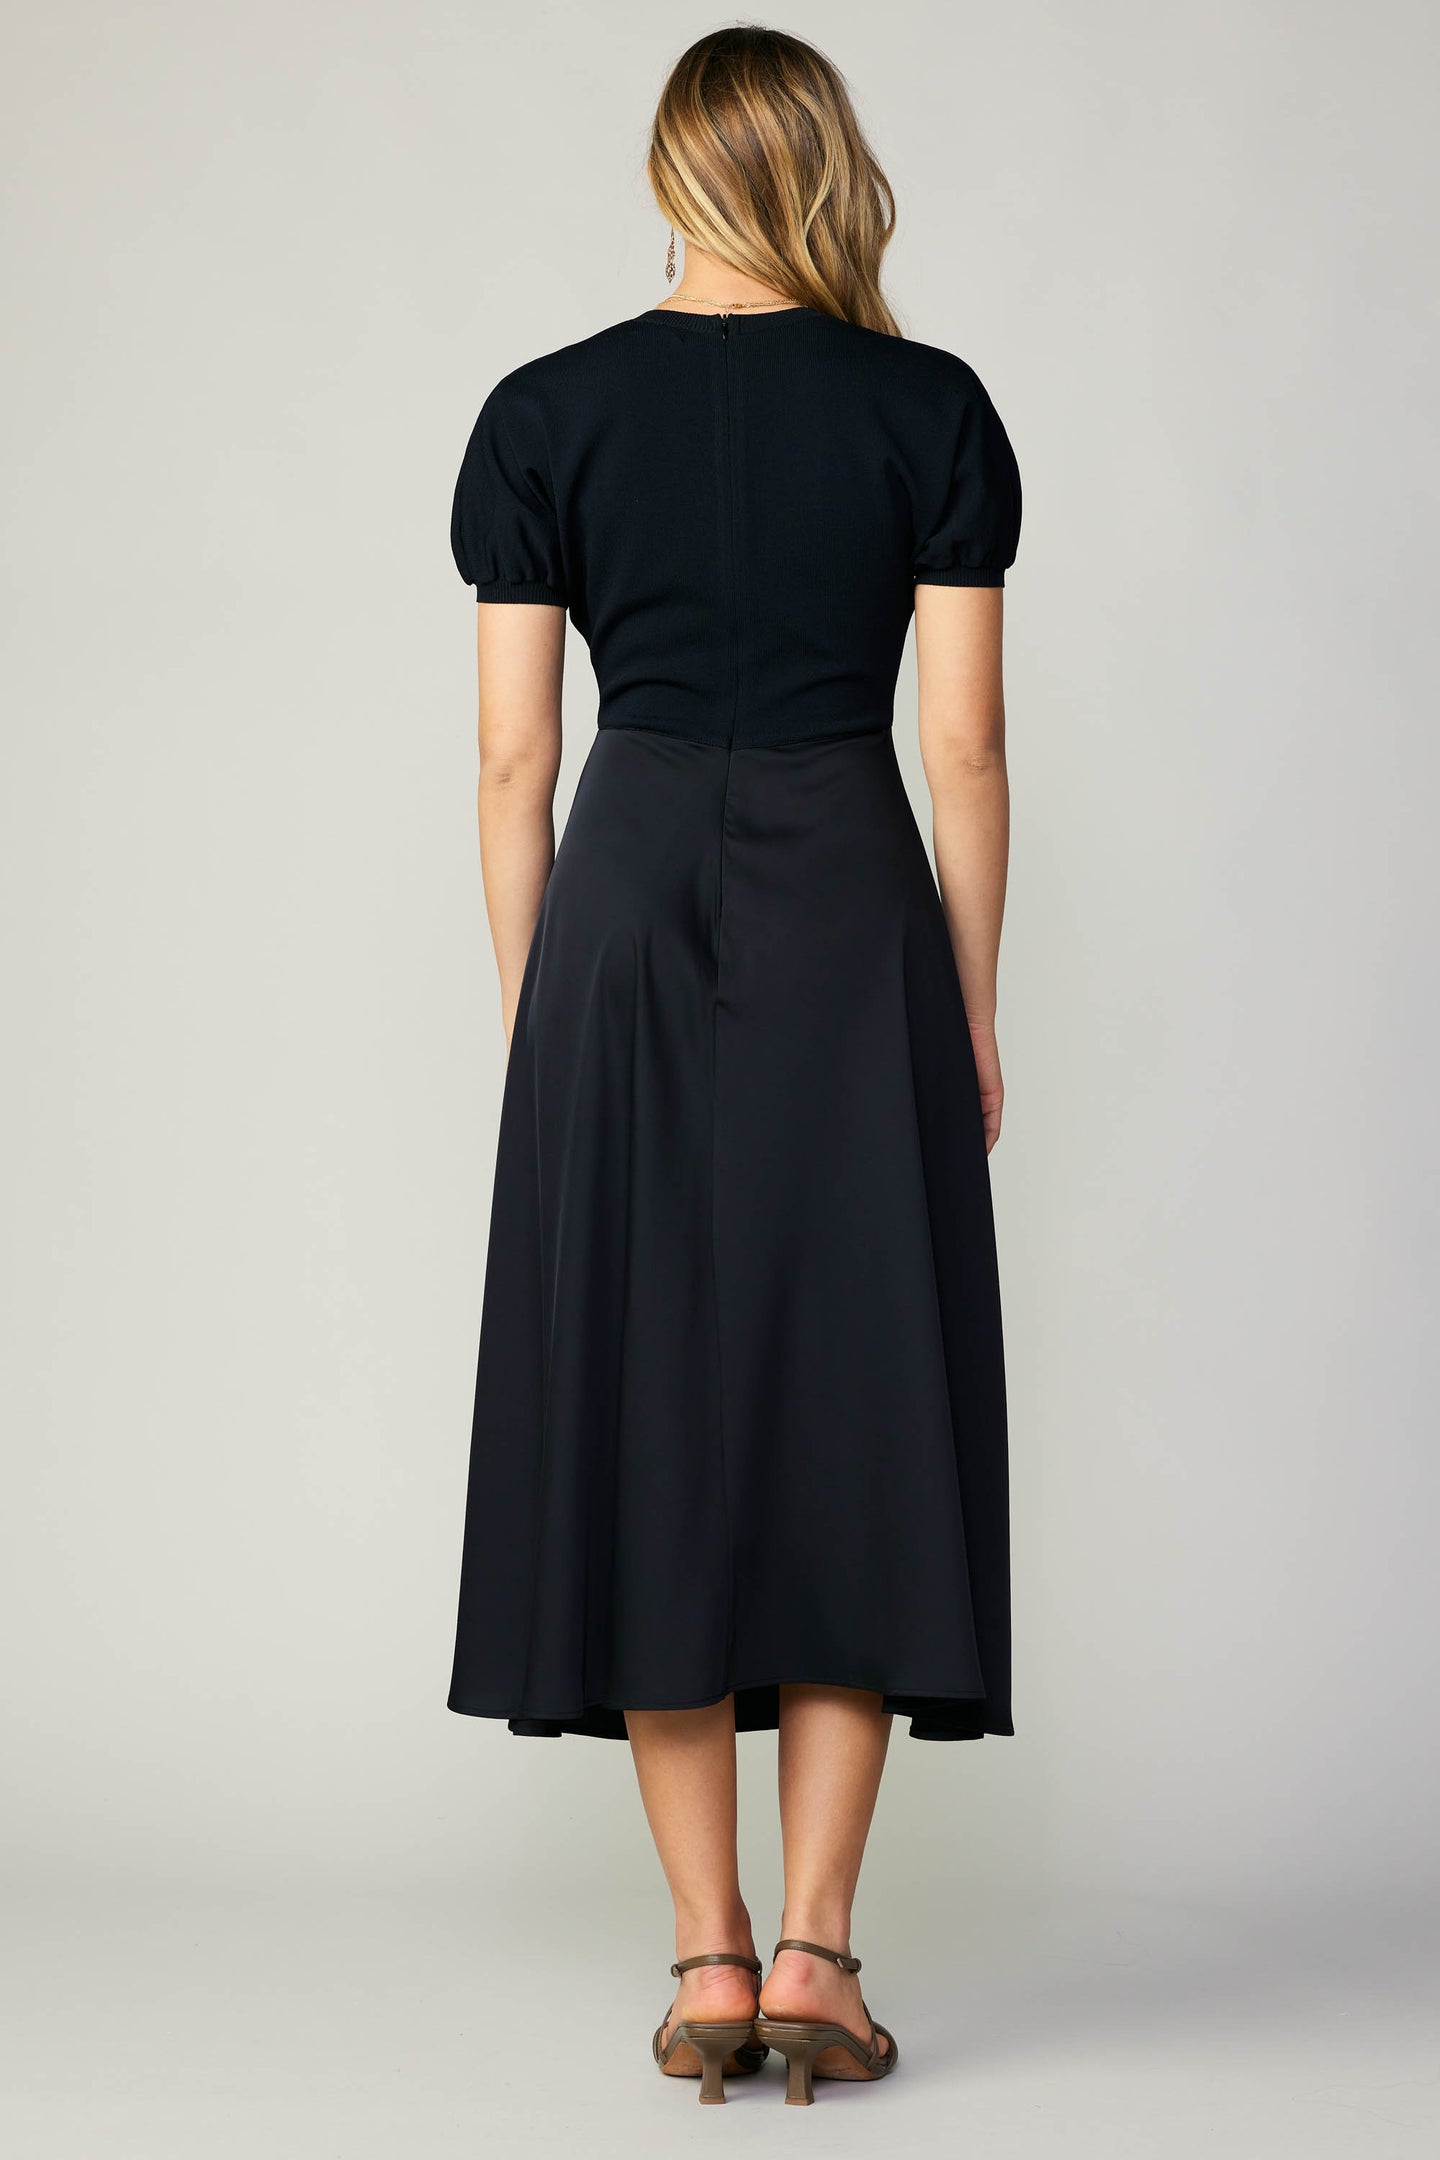 Contrast Knit Midi Dress